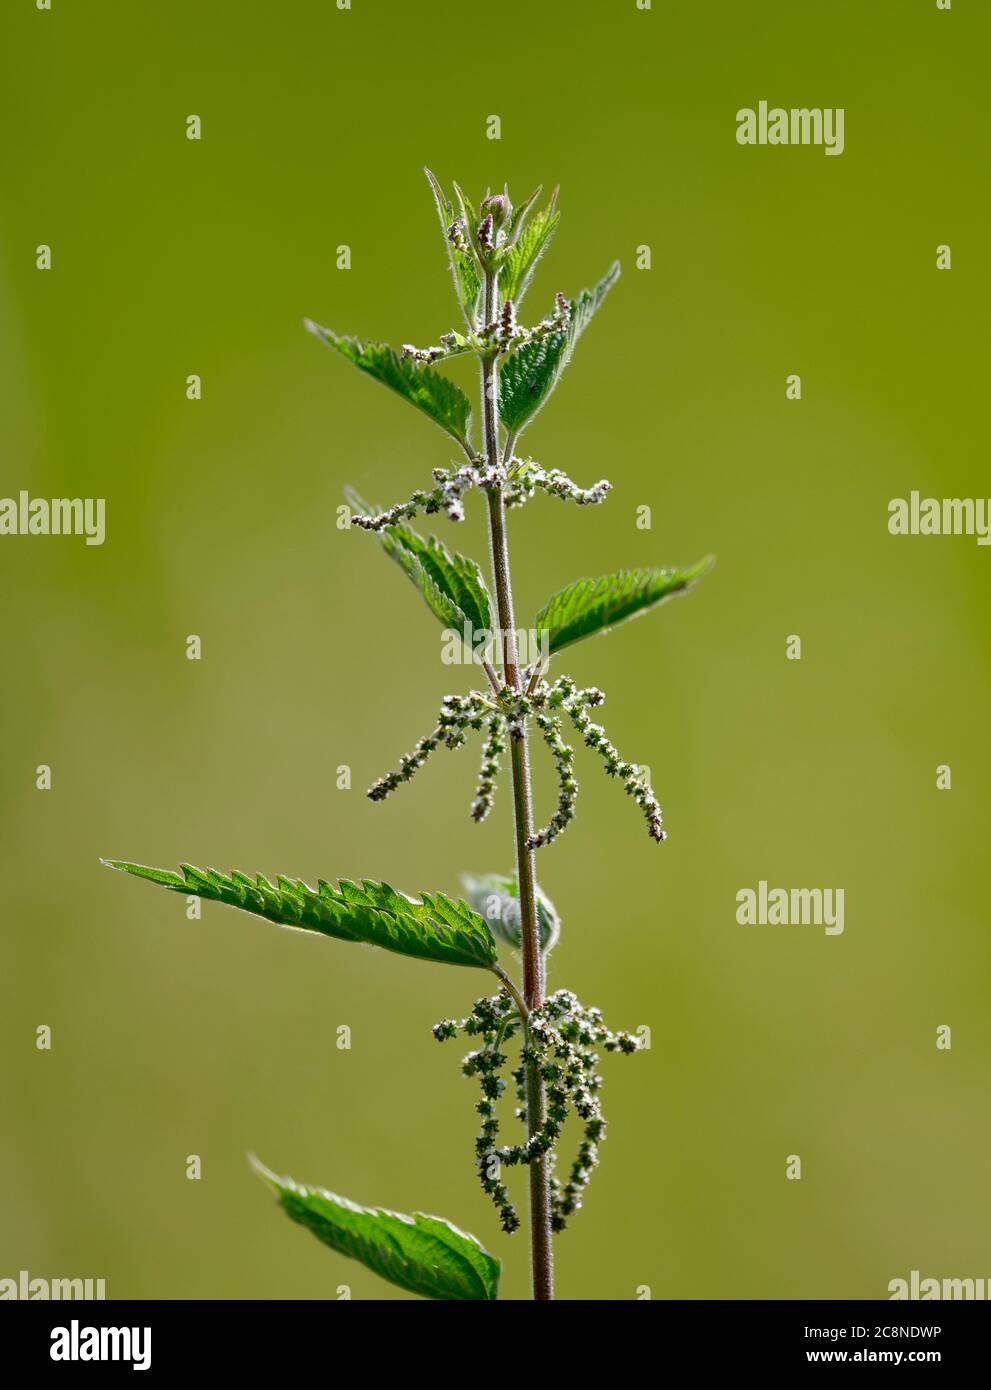 Gewöhnliche Brennnessel (Urtica dioica) auch bekannt als Brennnessel fotografiert vor einem schlichten grünen Hintergrund Stockfoto